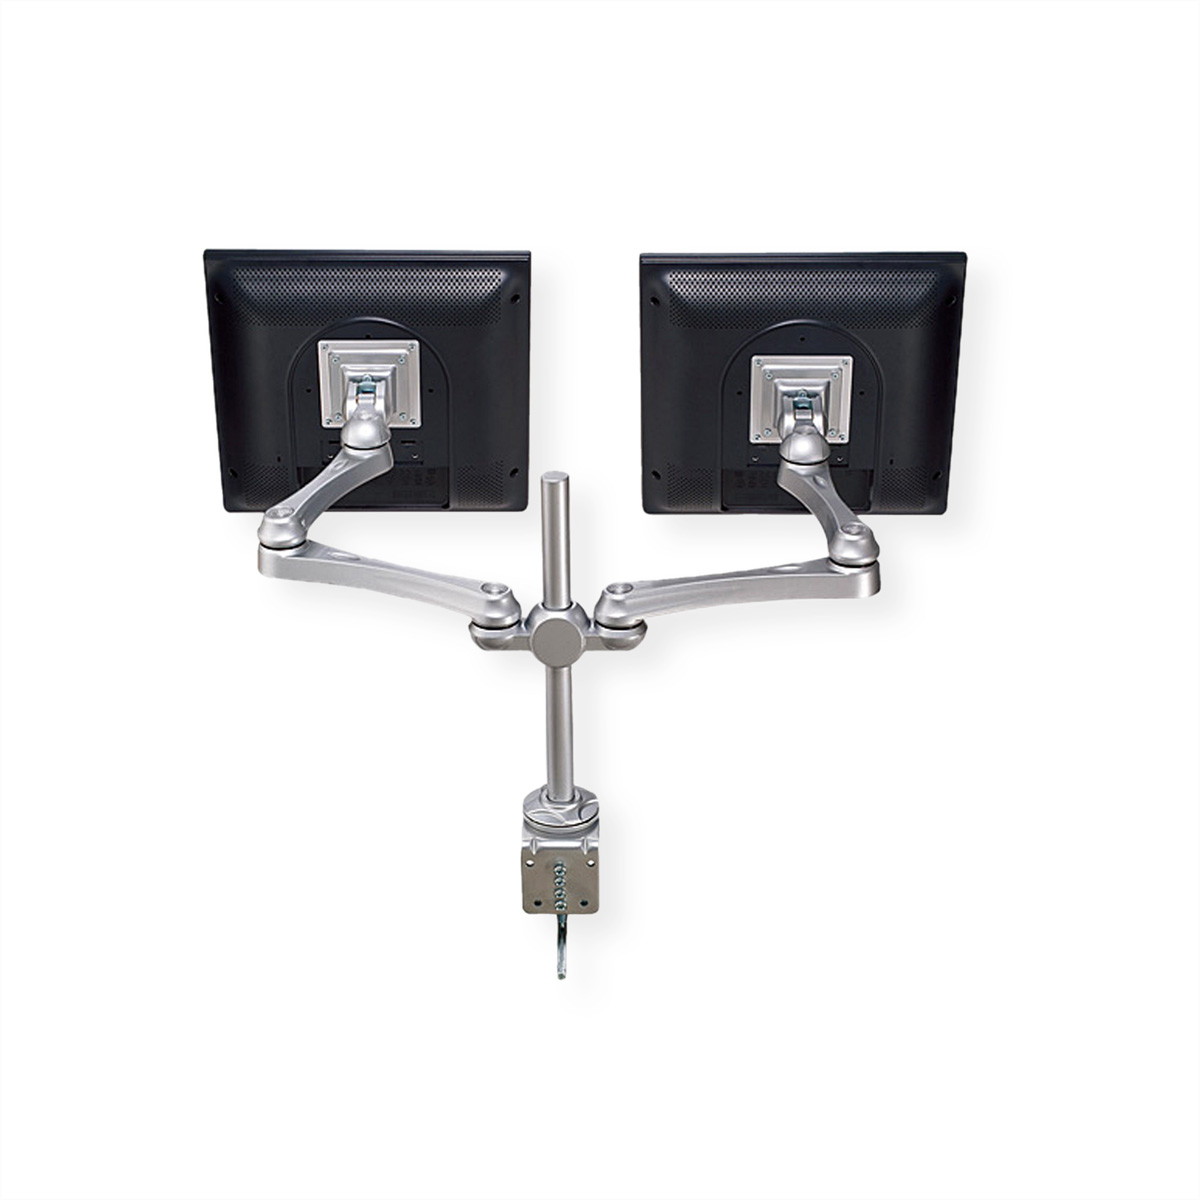 ROLINE LCD-Doppelarm Trägerstange, 4 Tischmontage Monitorarm, Tischmontage Gelenke